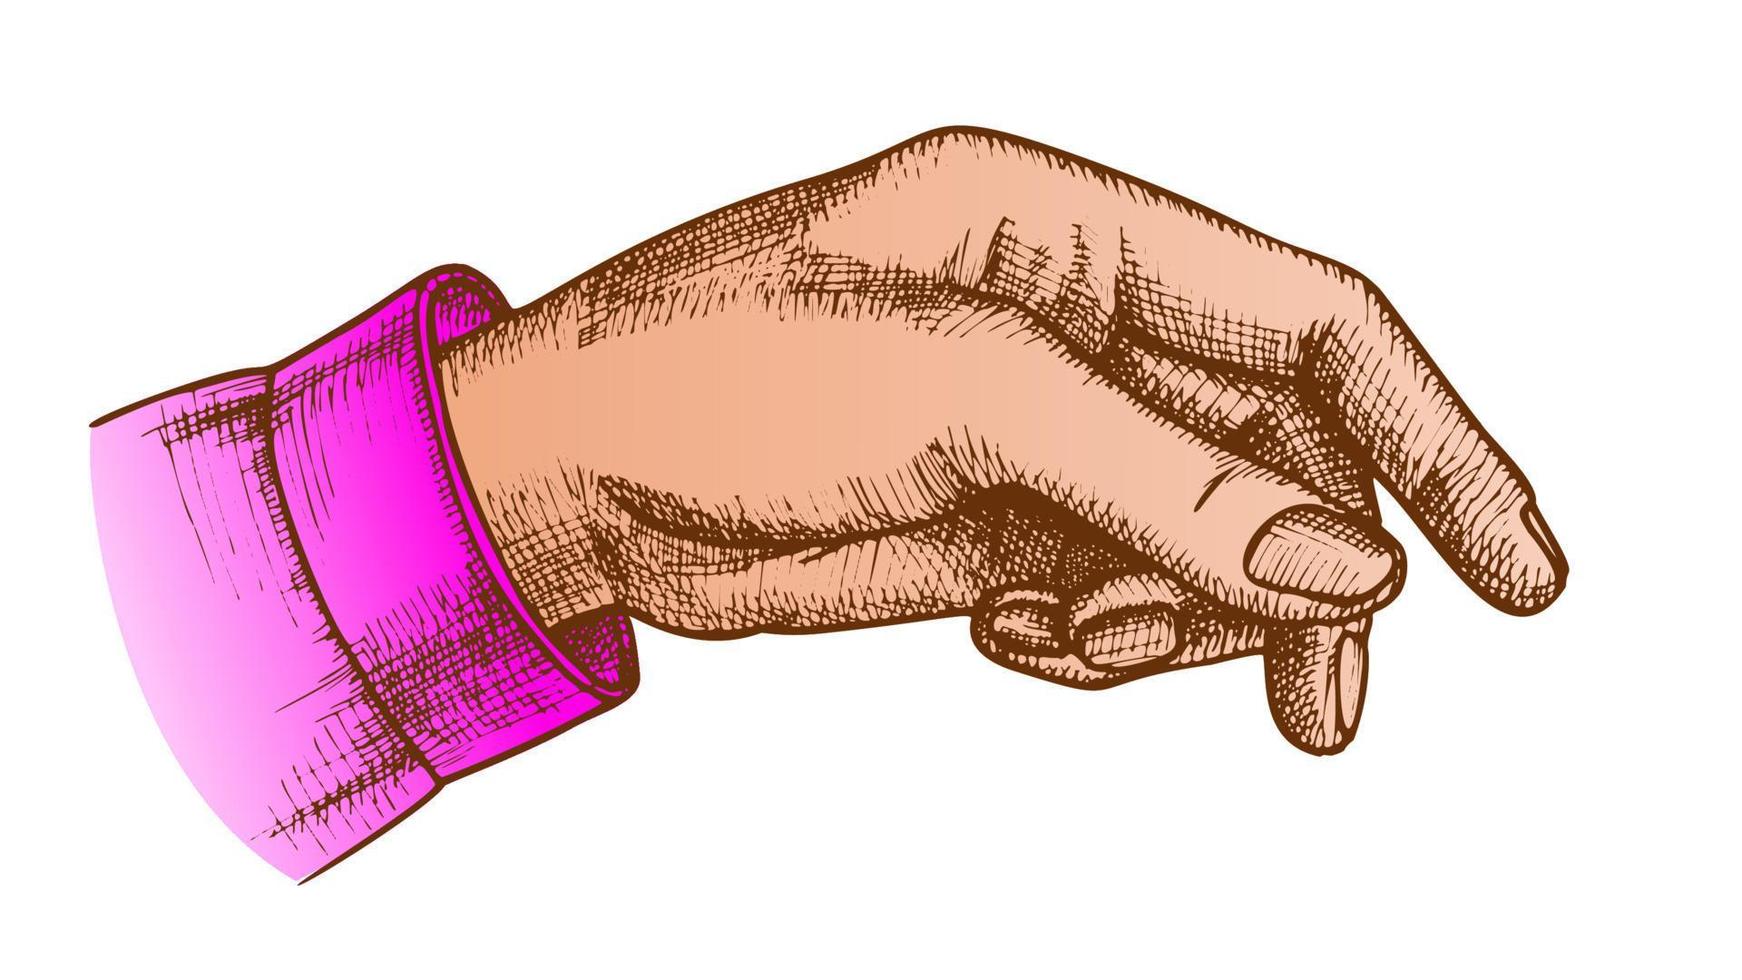 Farbzeigerfinger der weiblichen Hand, der Gestenvektor zeigt vektor